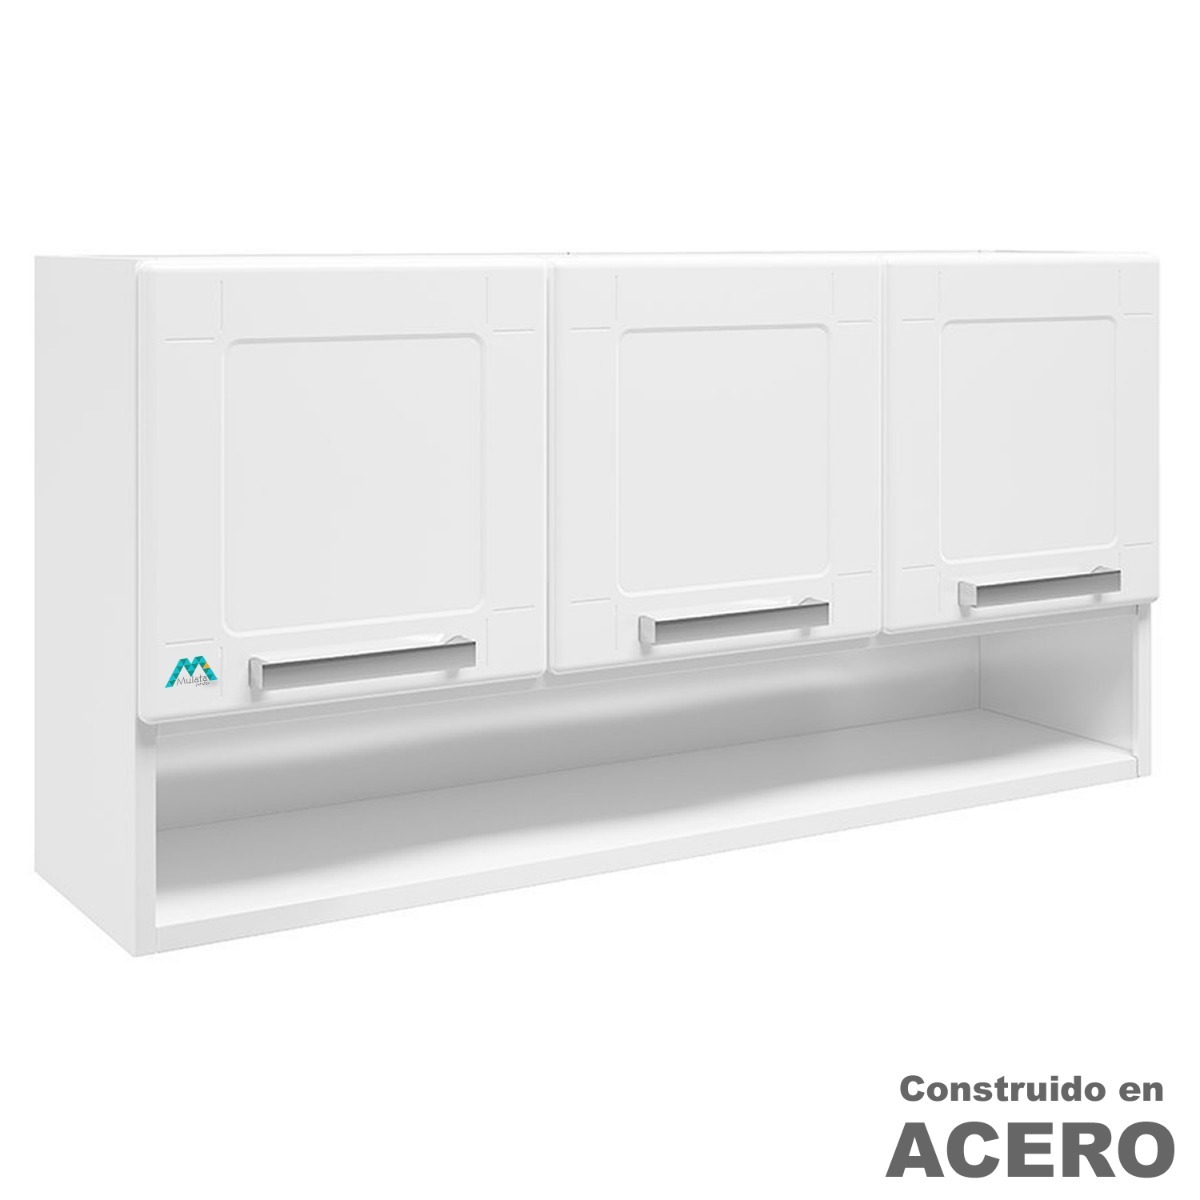 Mueble Aereo 3 Puertas En Acero Estante Alacena Armario - $ 2.990,00 en